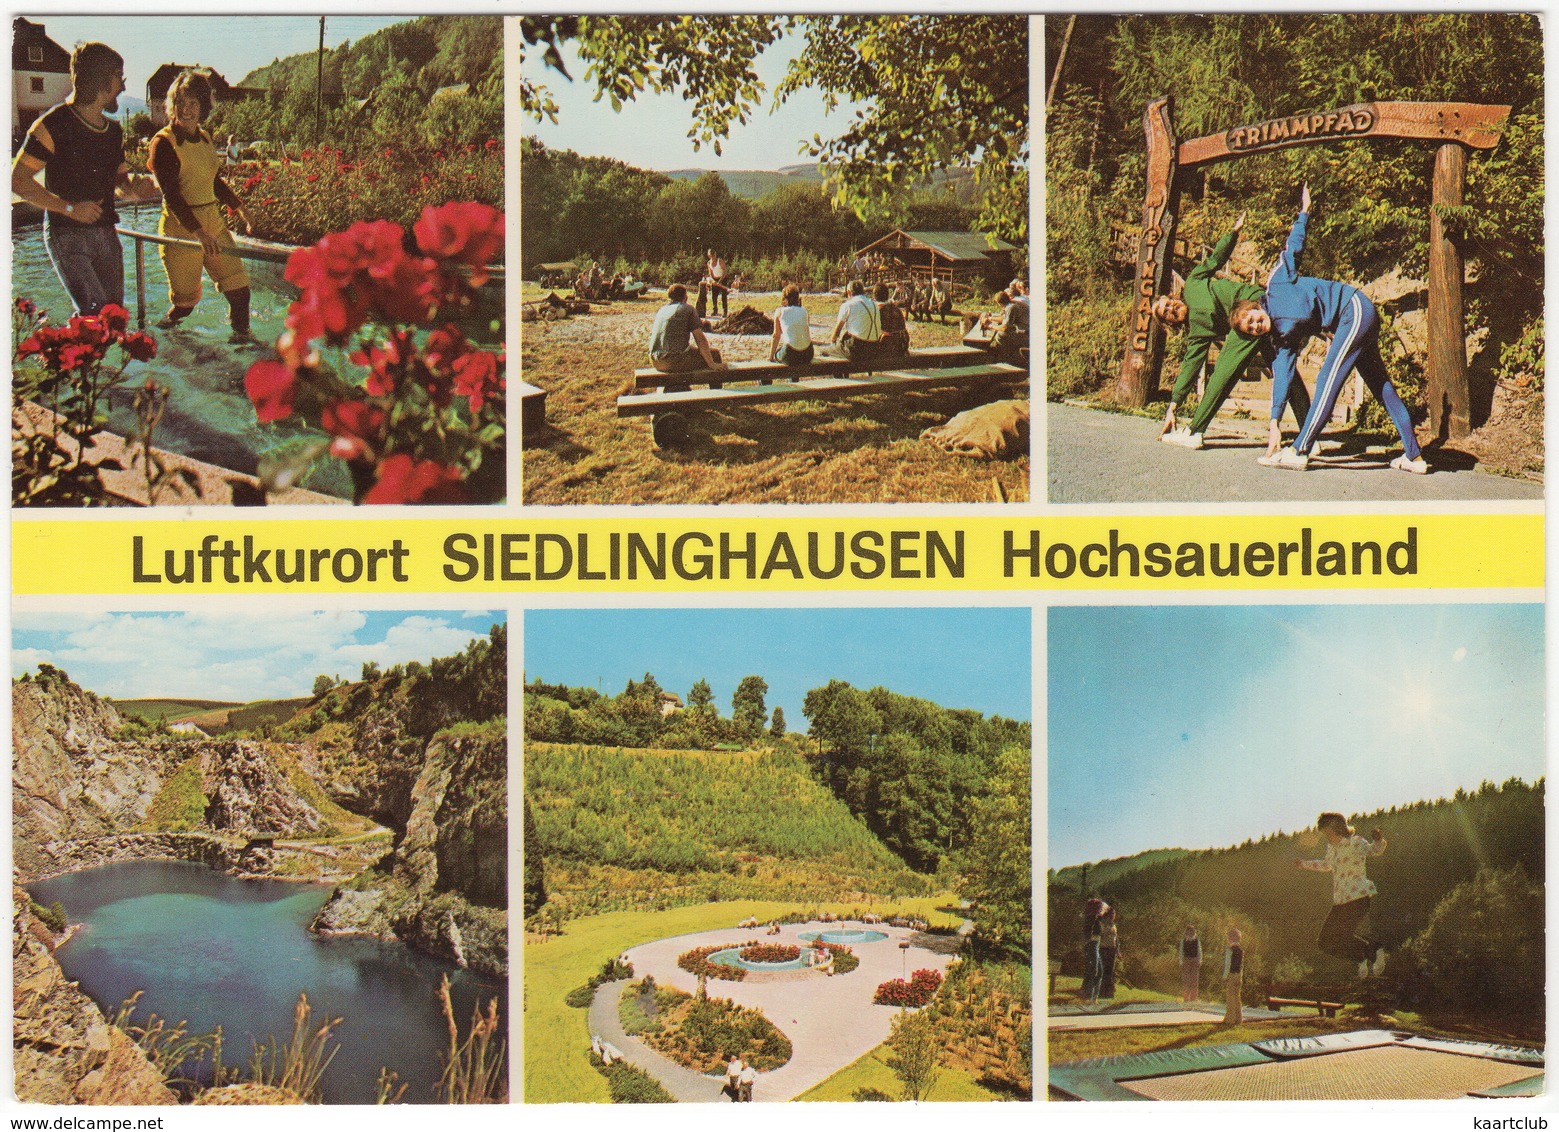 Luftkurort Siedlinghausen, Hochsauerland - (u.a. Trimmpfad & Trampoline) - Winterberg